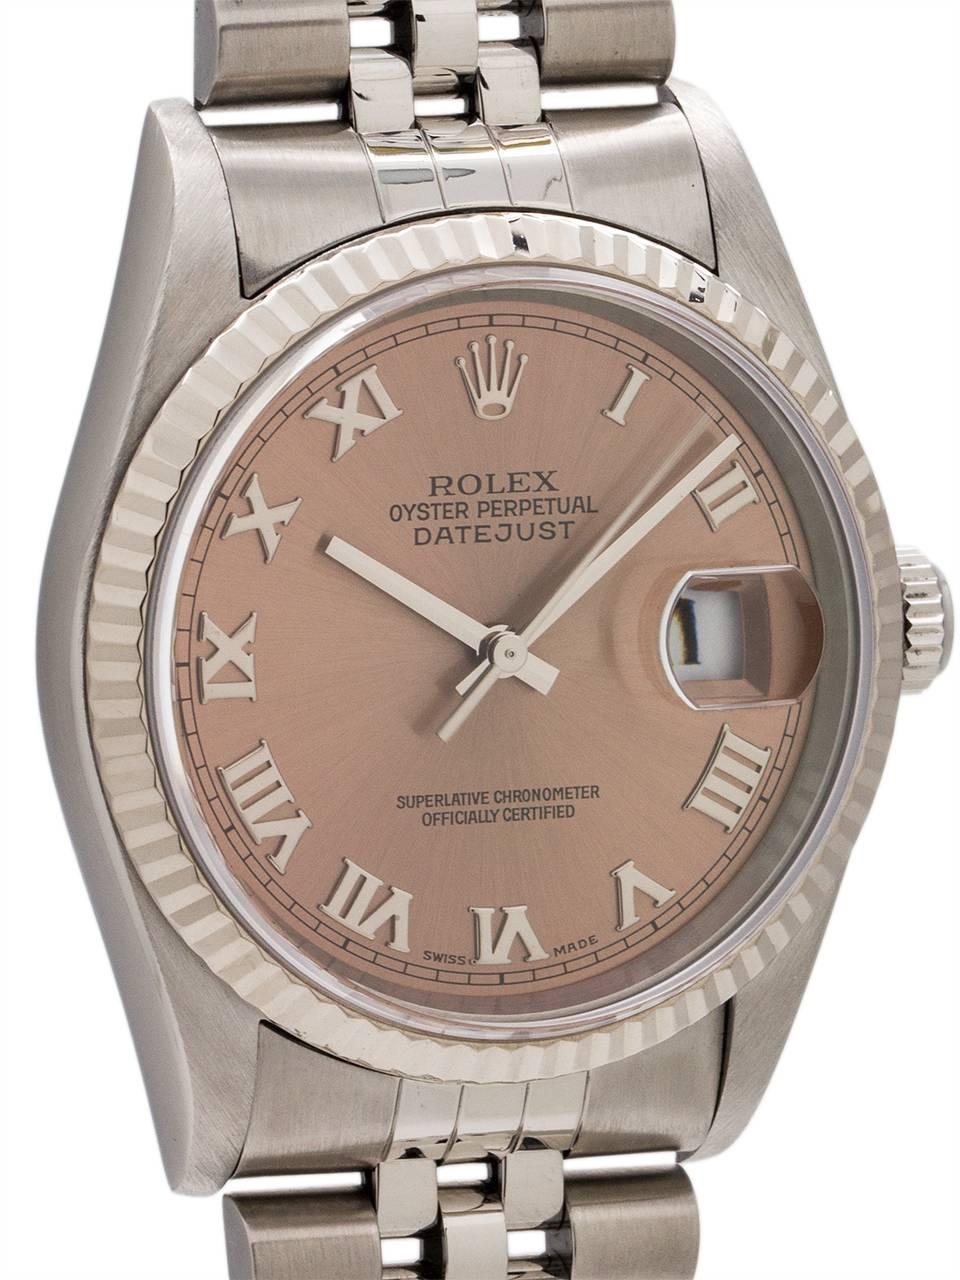 Modern Rolex Yellow Gold Stainless Steel Datejust Wristwatch Ref 16234, circa 1997